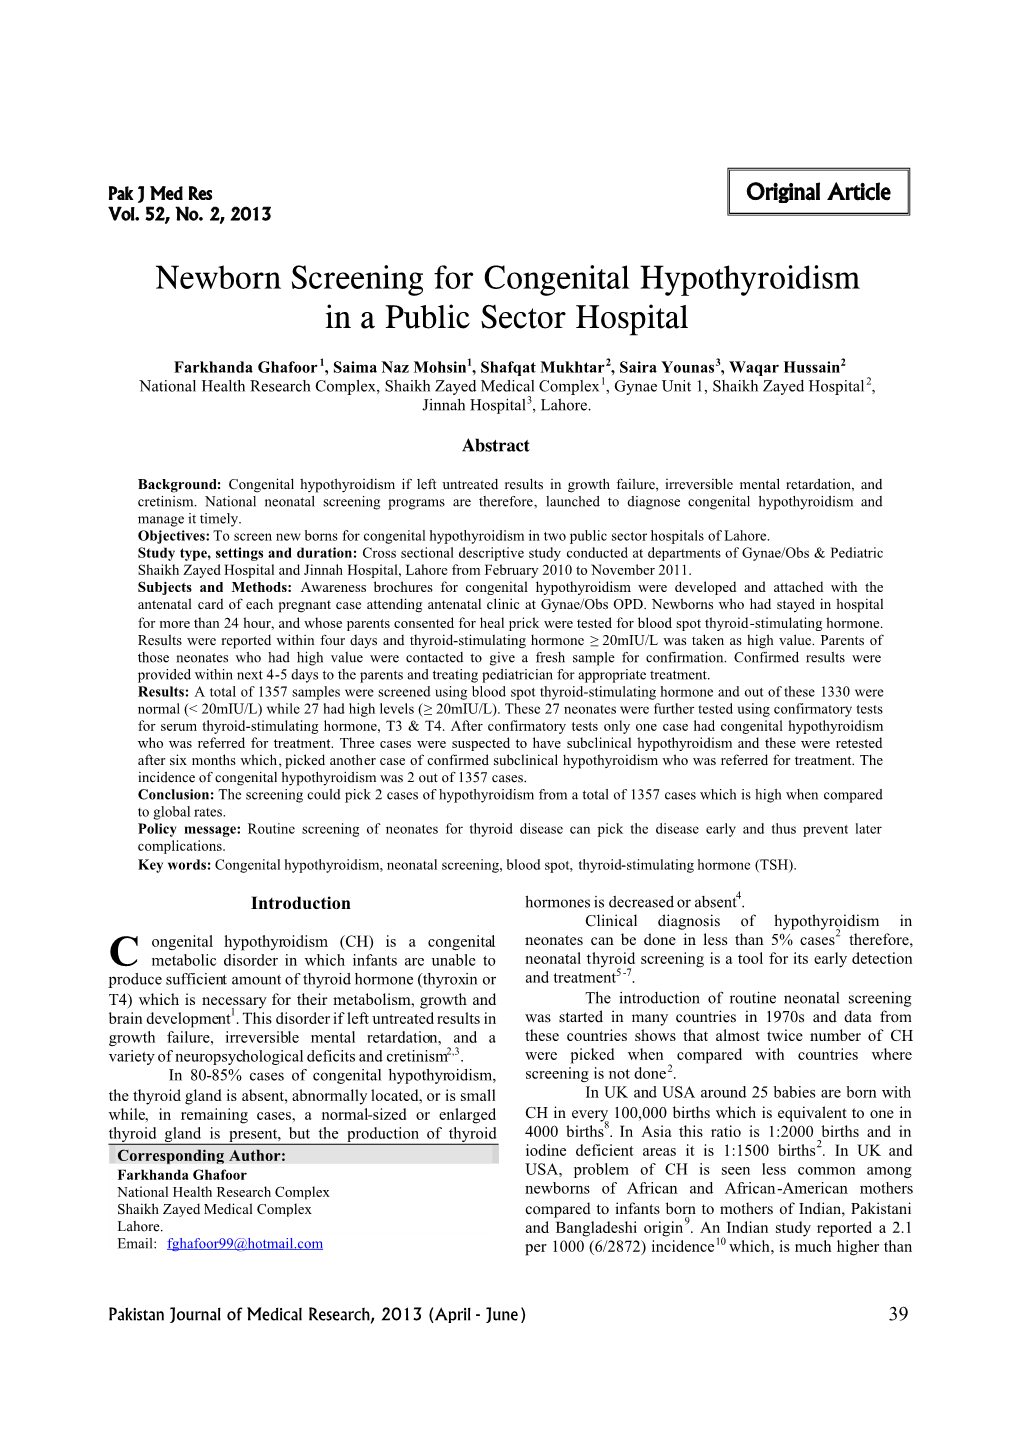 Newborn Screening for Congenital Hypothyroidism in a Public Sector Hospital